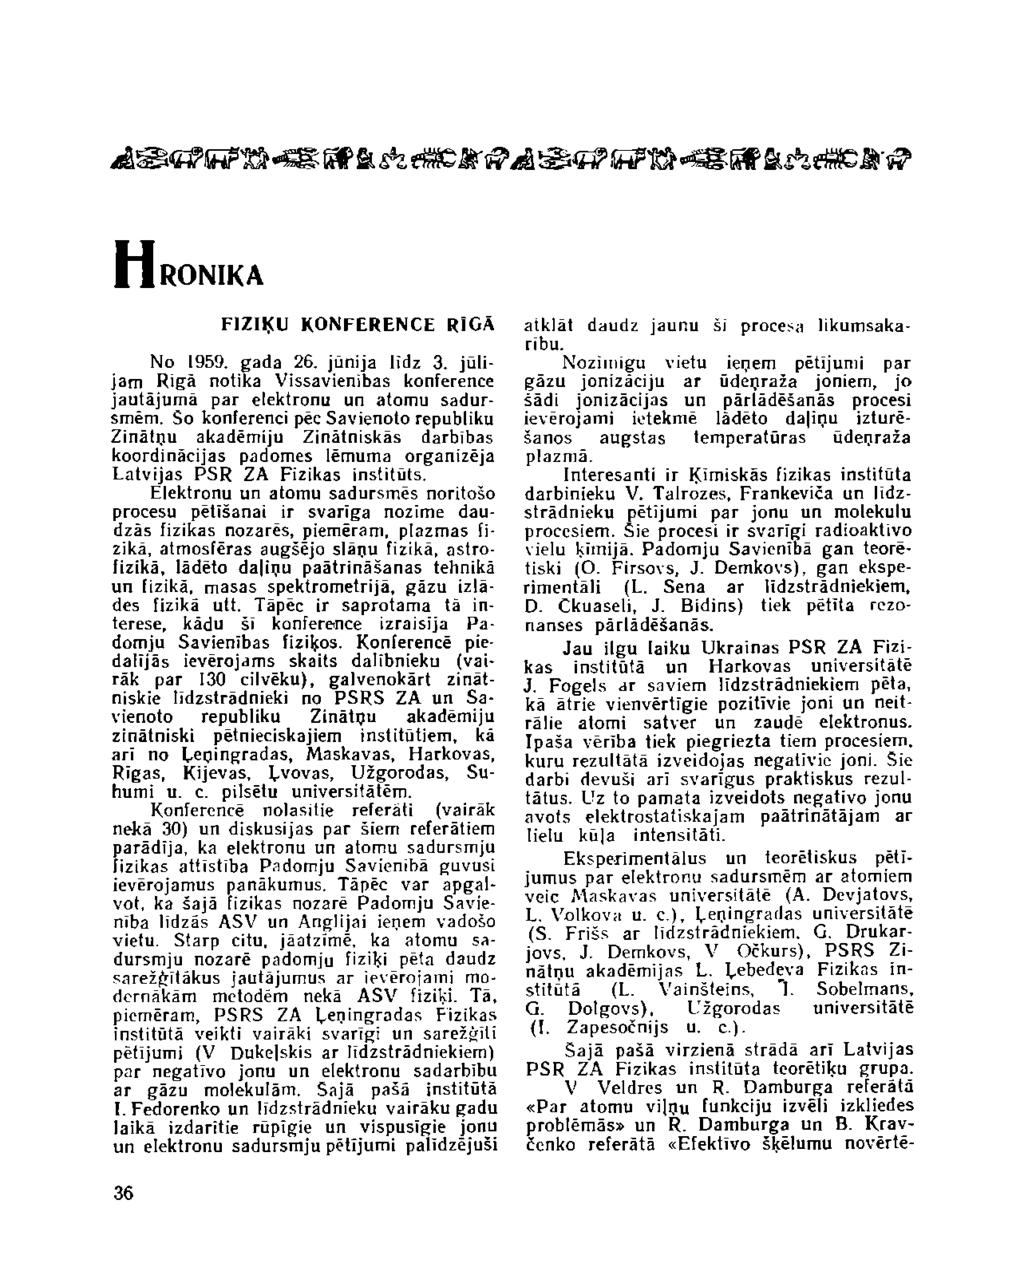 HRONIKA FIZIĶU KONFERENCE RIGĀ No 1959. gada 26. jūnija līdz 3. jūlijam Rīgā notika Vissavienības konference jautājumā par elektronu un atomu sadursmēm.